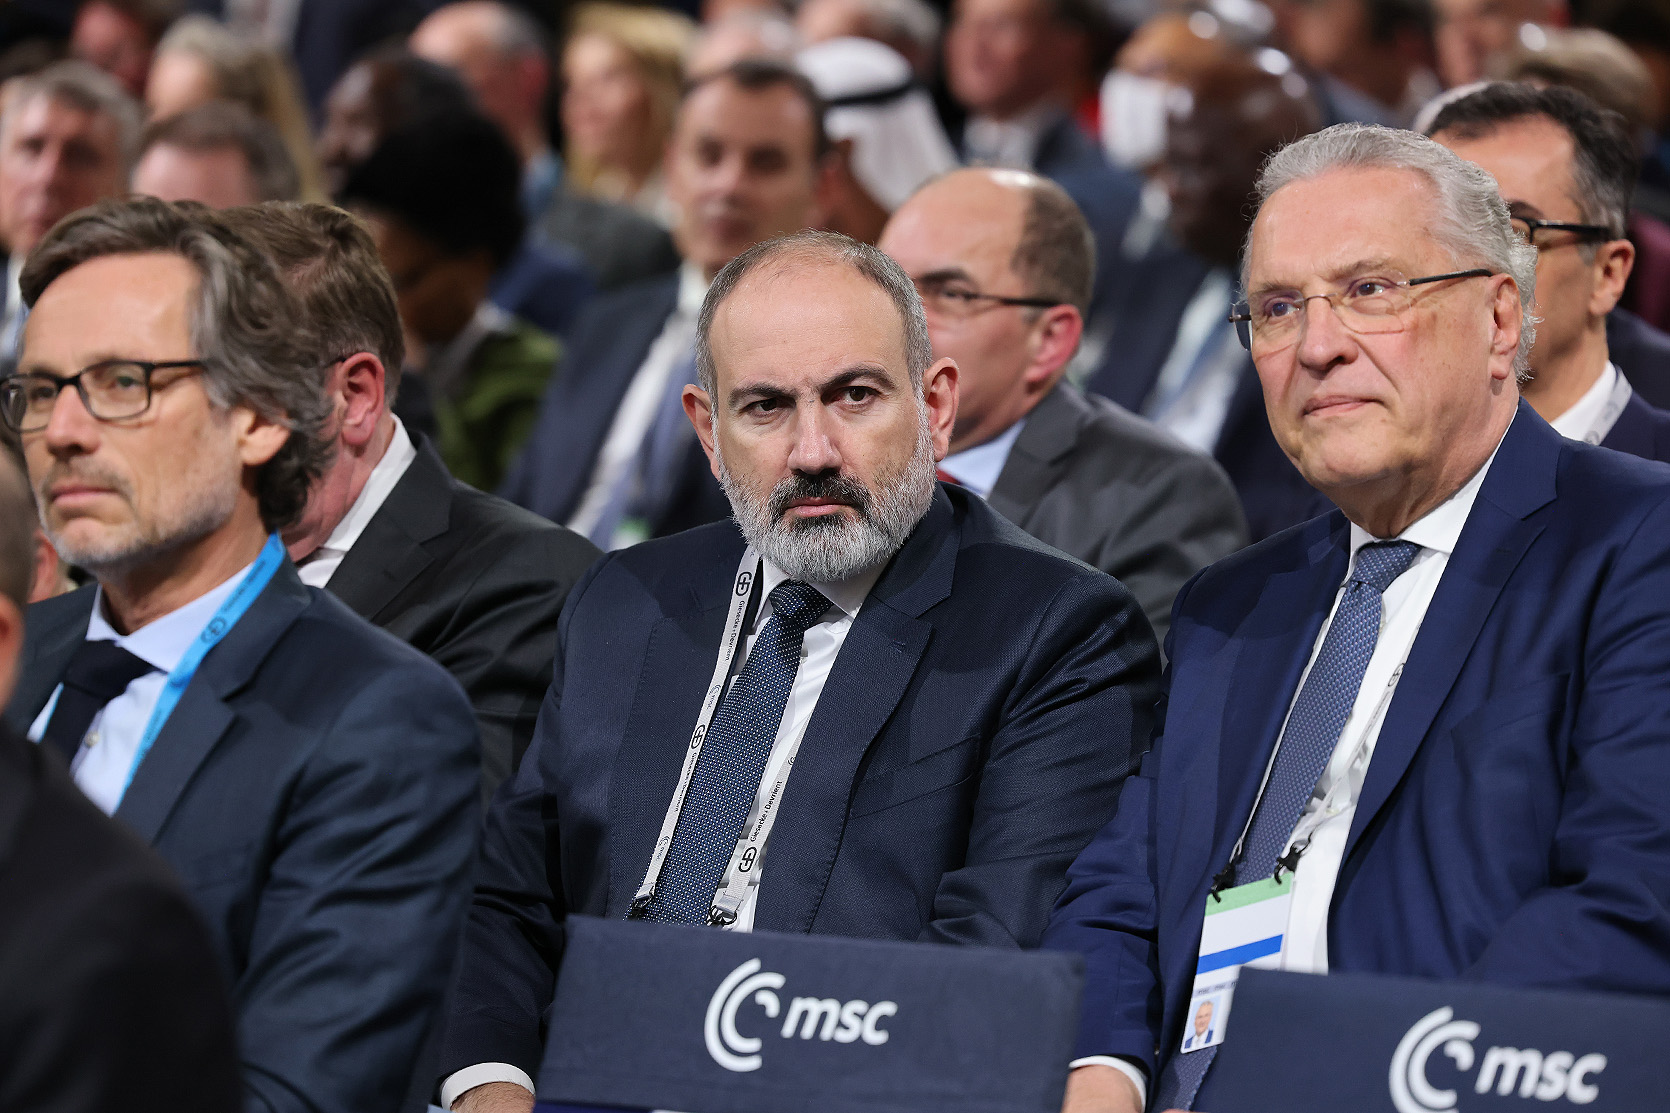 Никол Пашинян присутствовал на церемонии открытия Мюнхенской конференции по безопасности